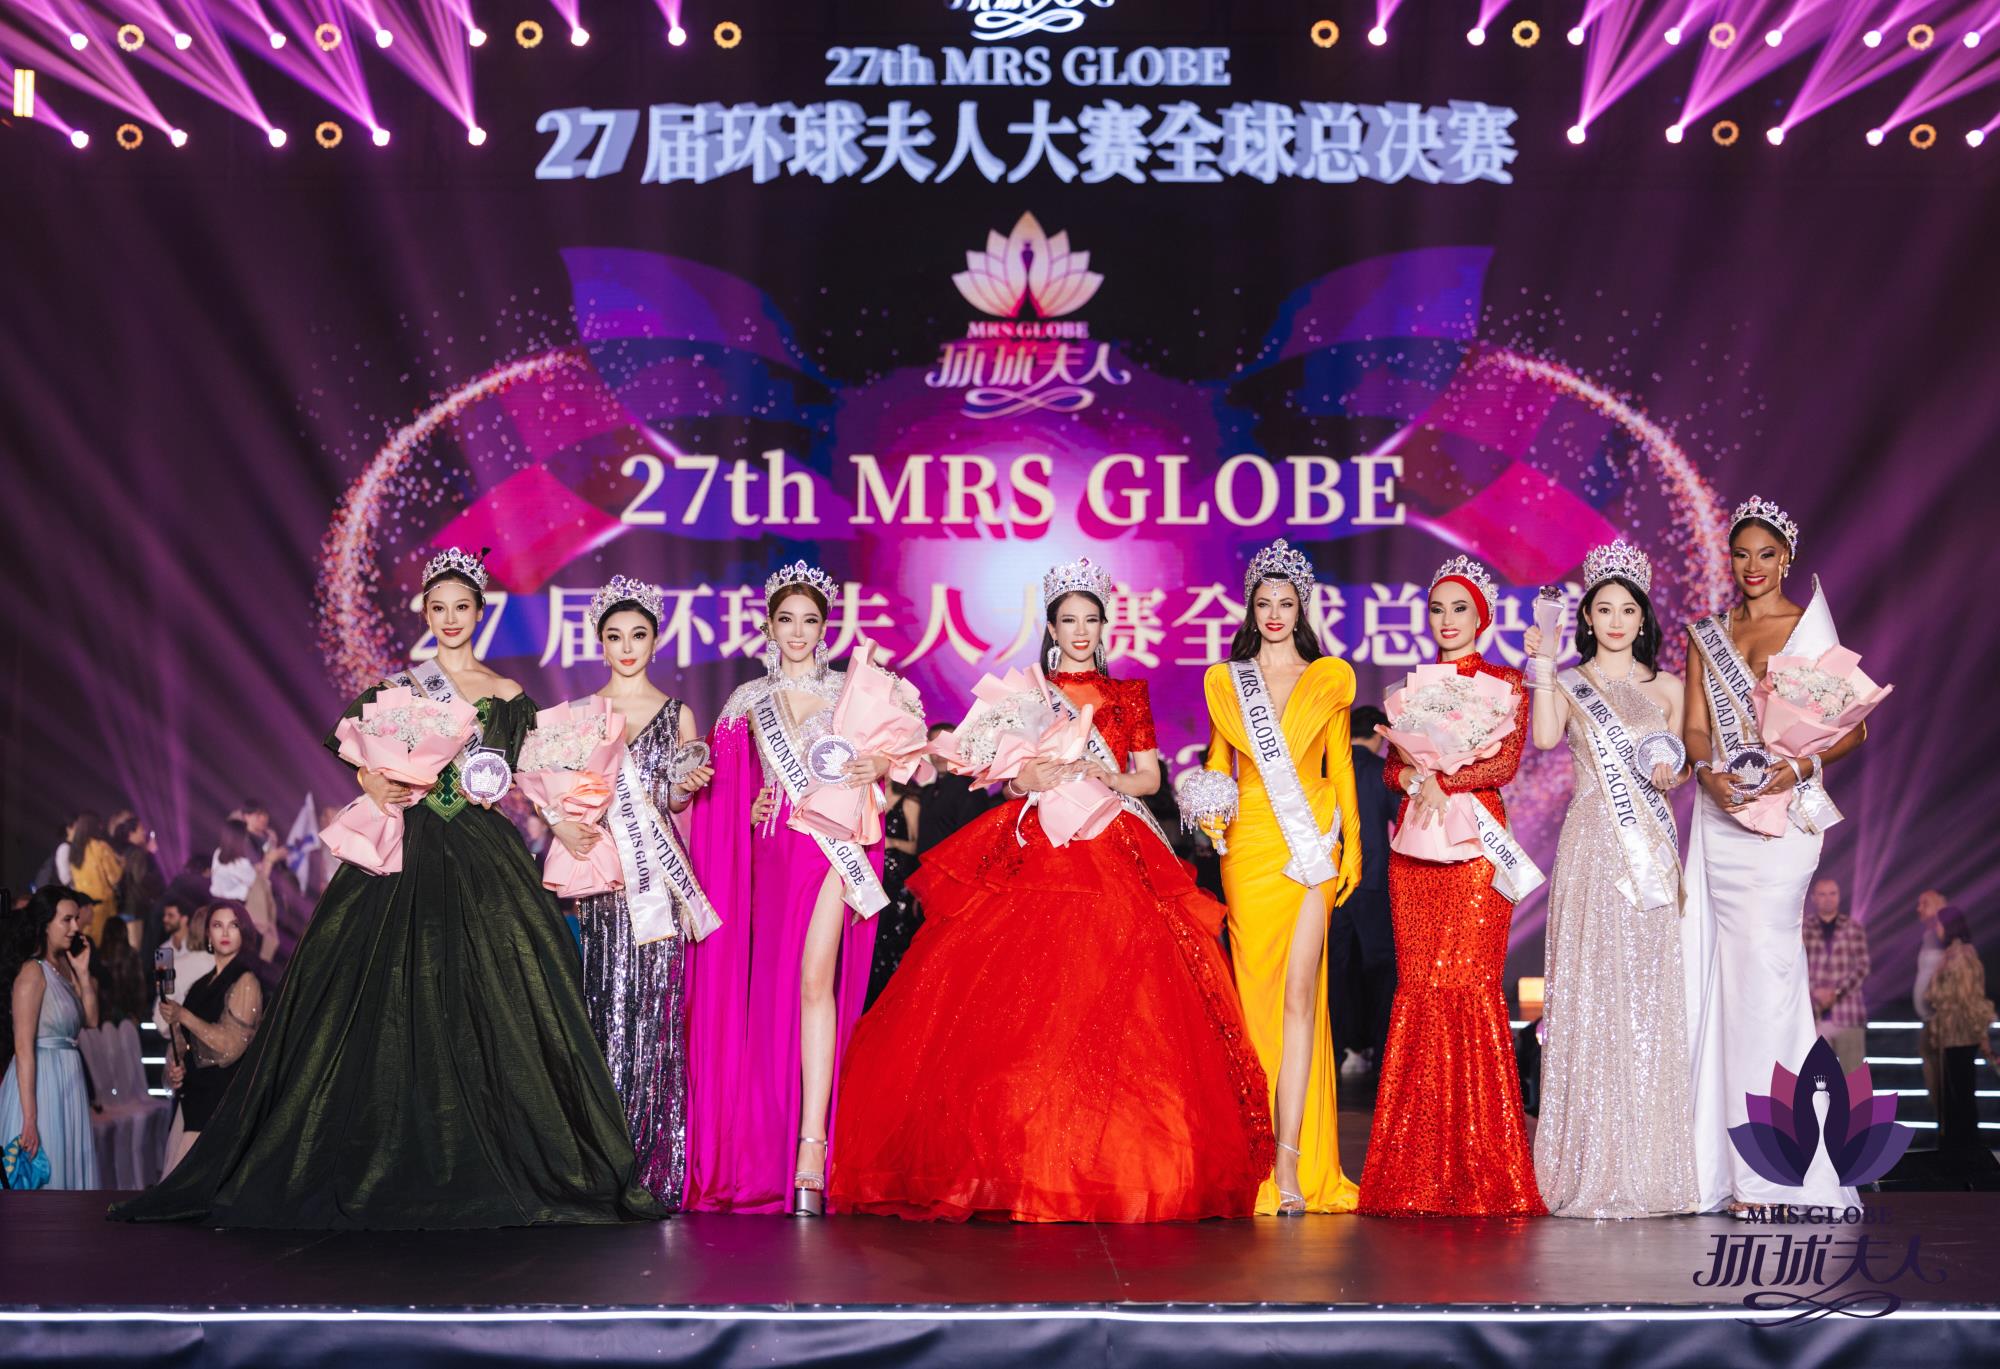 刘熙婷荣获第27届环球夫人全球总决赛年度总冠军、亚洲总冠军